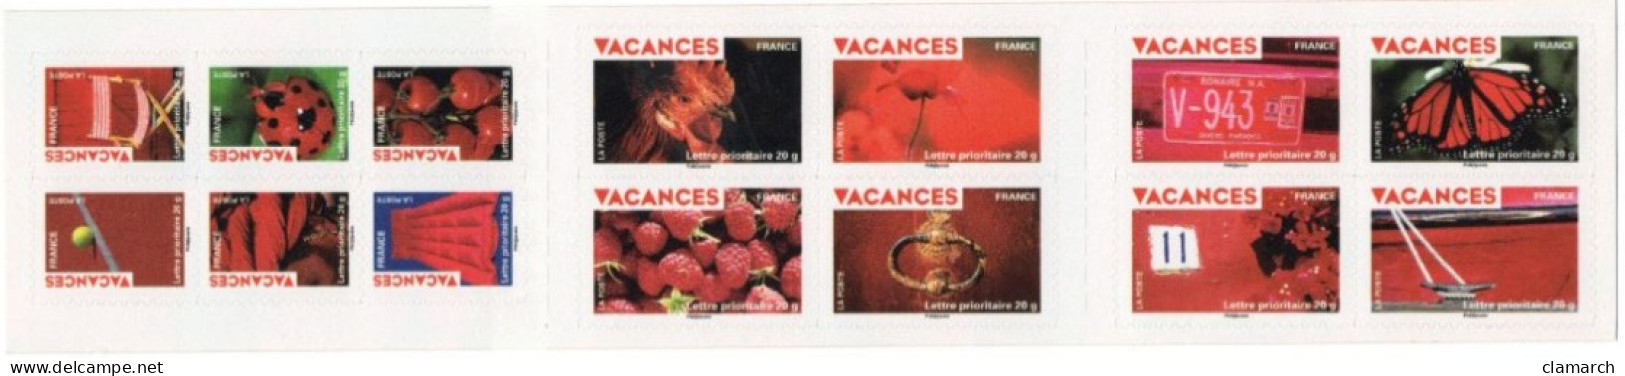 FRANCE NEUF-TàVP-Carnet Timbres Pour Vacances De 2009 N° 315-cote Yvert 36.40 - Unused Stamps